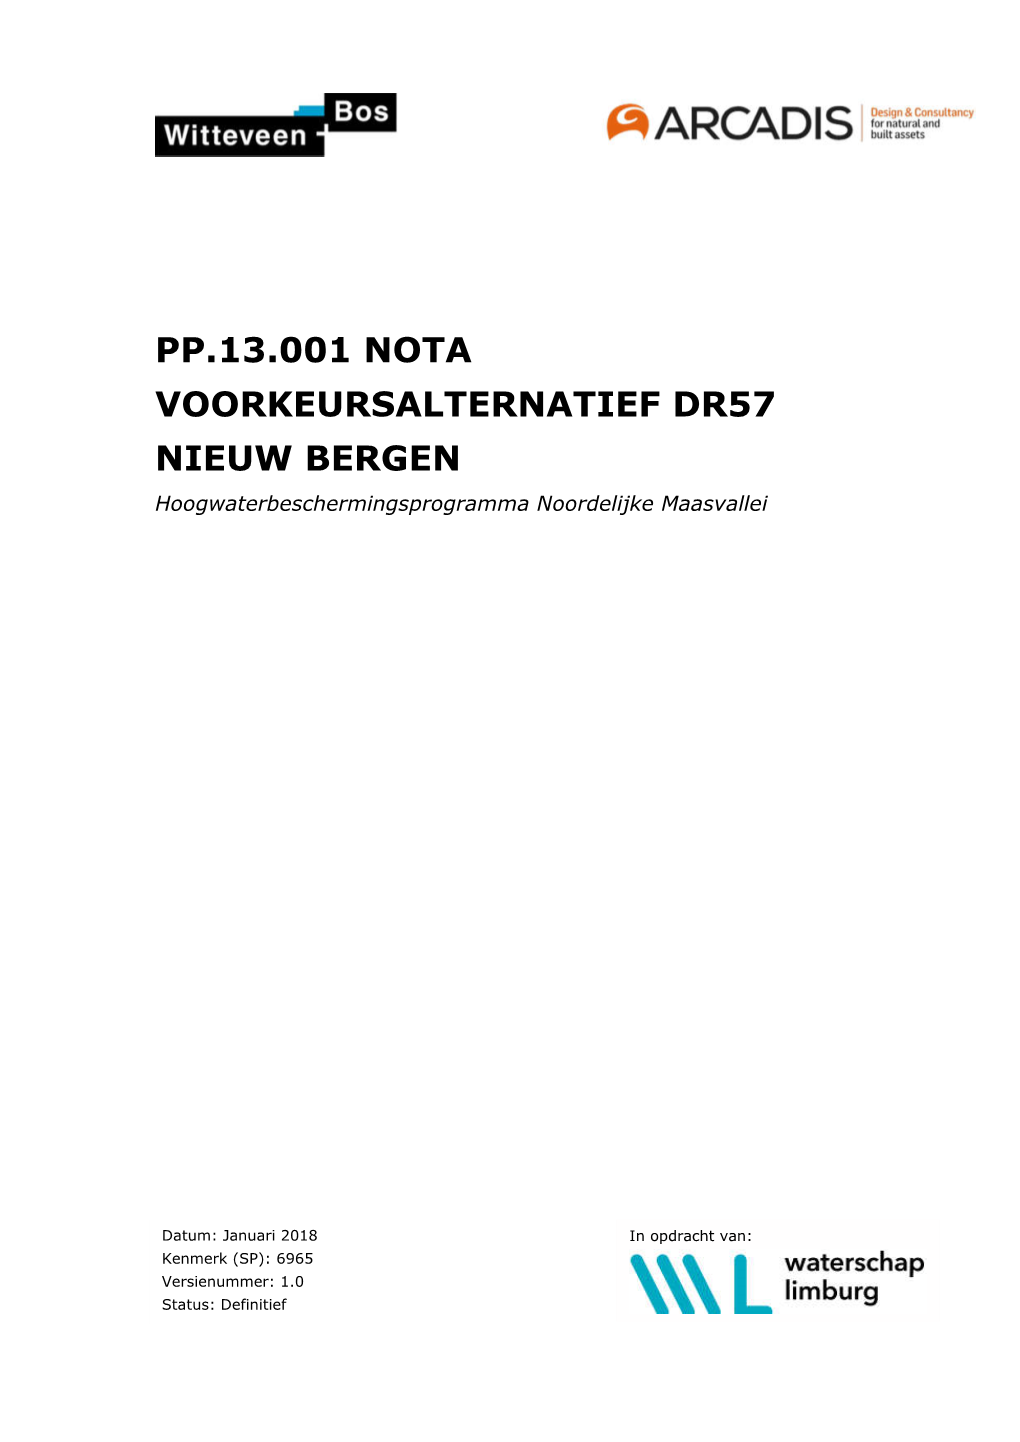 PP.13.001 NOTA VOORKEURSALTERNATIEF DR57 NIEUW BERGEN Hoogwaterbeschermingsprogramma Noordelijke Maasvallei